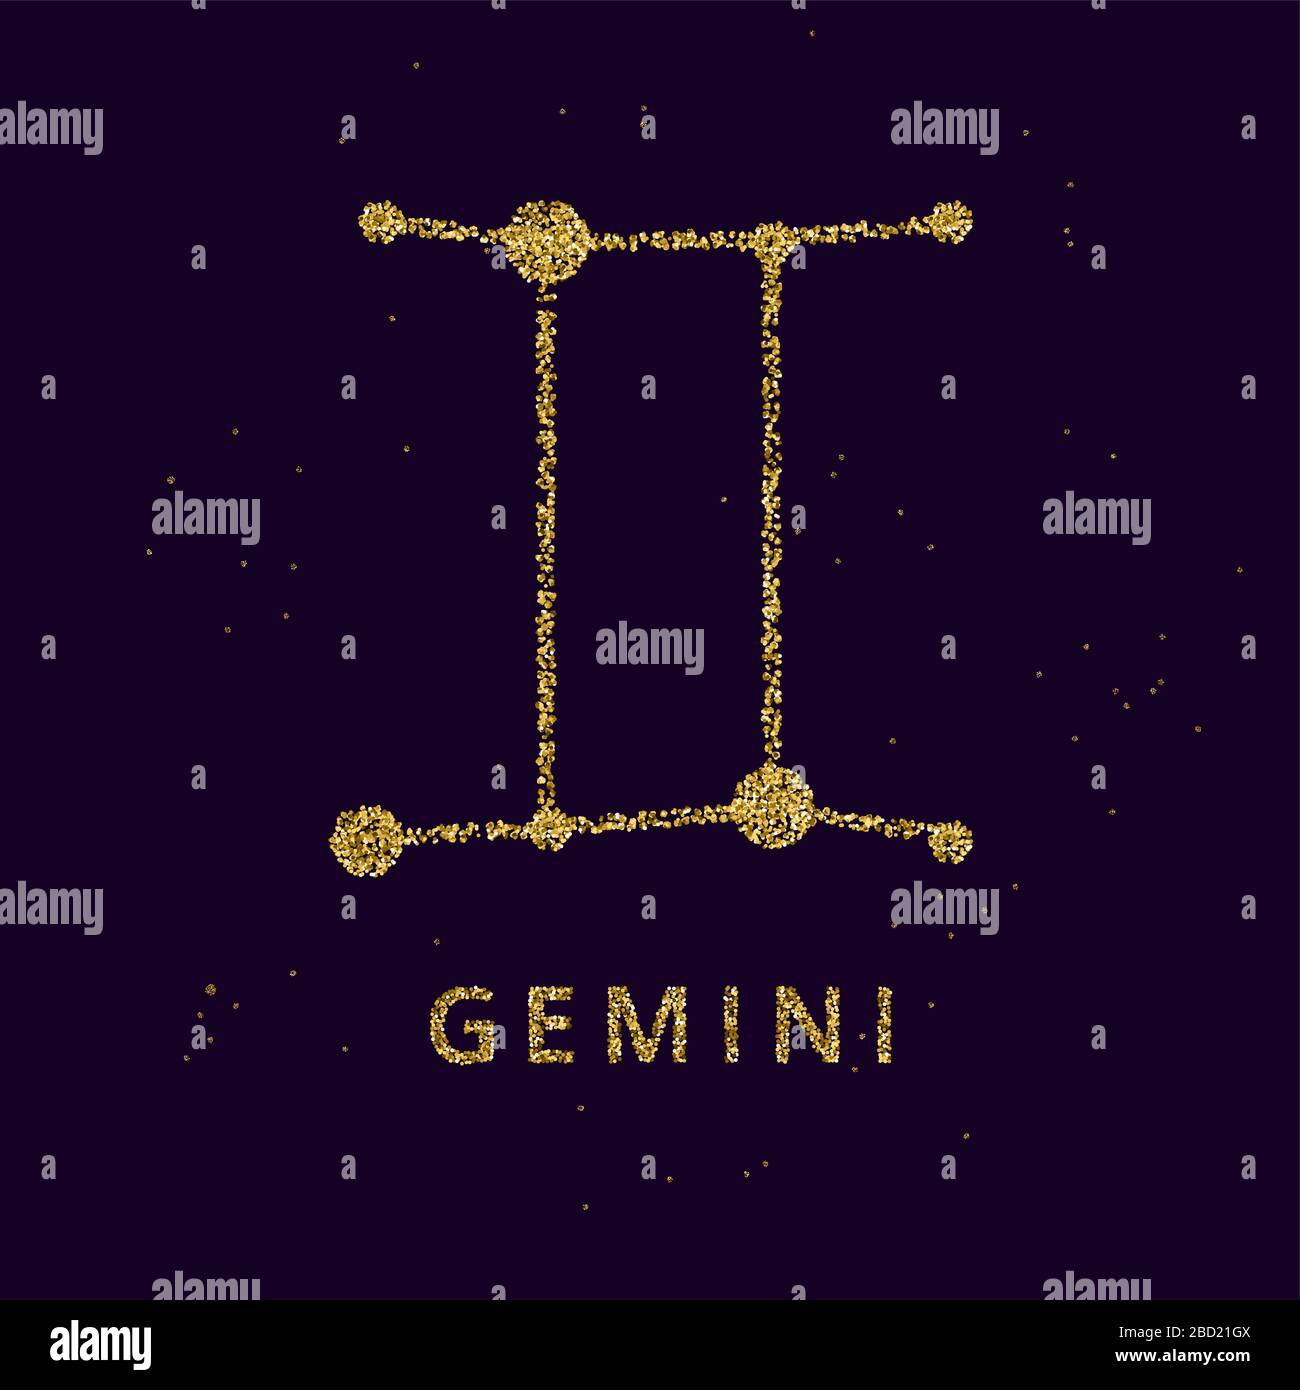 Gemini Zodiac Horoskop Schild, die Astrologie simbol in goldenem glänzendem glitzernden Stil auf schwarzem Himmelshintergrund. Stock Vektor